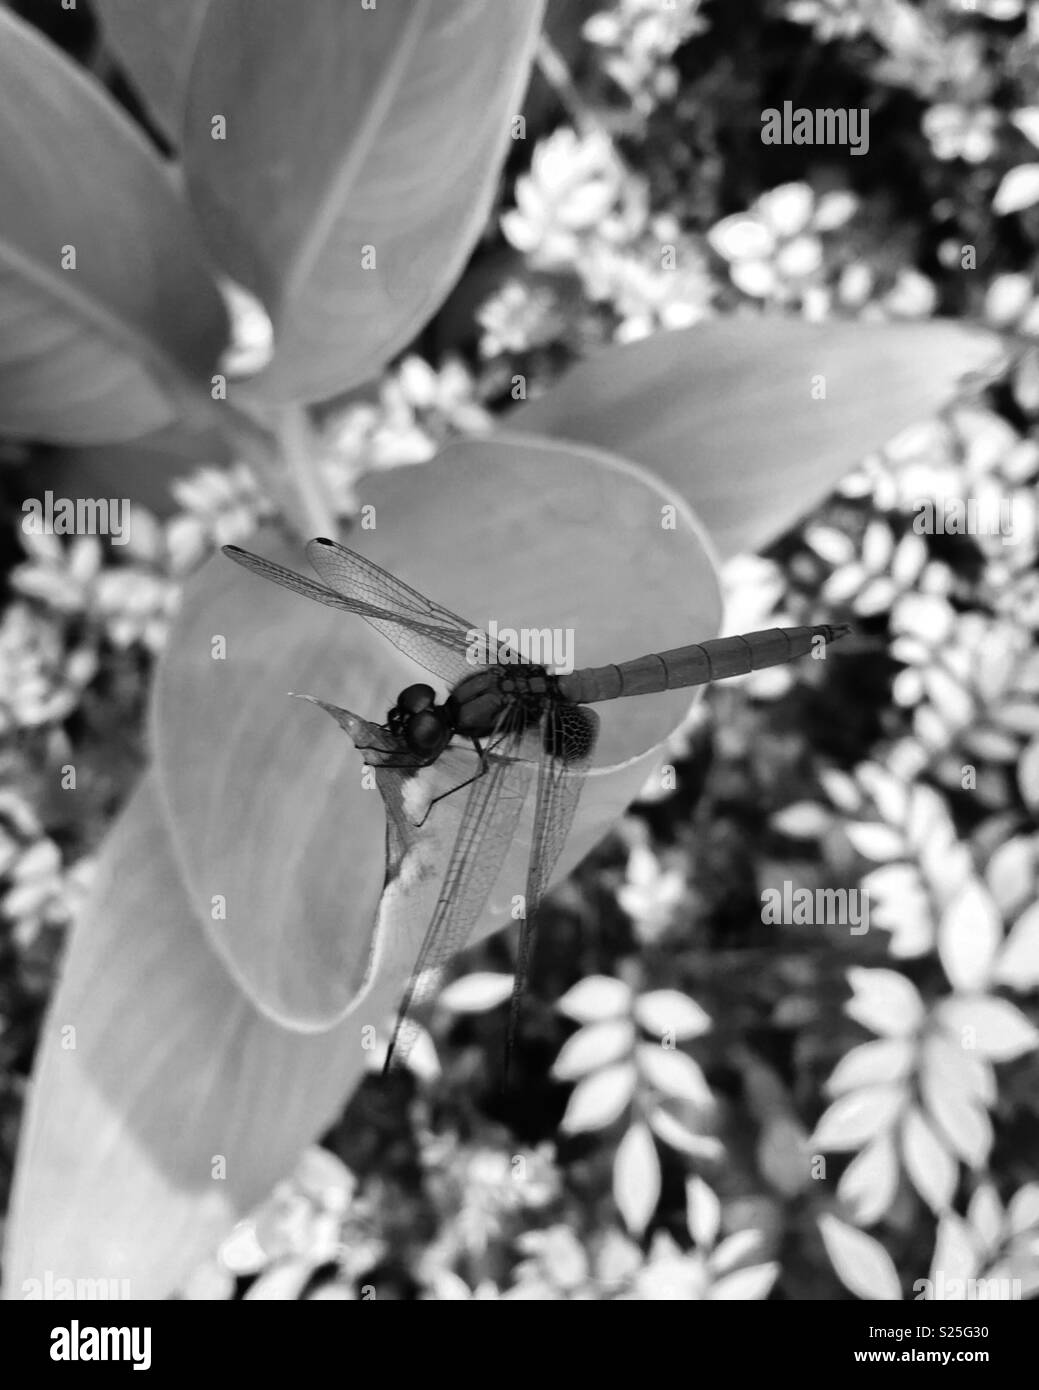 Ein purpurroter dropwing Dragonfly (Trithemis Aurora) klammerte sich an ein Blatt in der Sonnenbeschienenen Garten, in Schwarz und Weiß Foto. Stockfoto